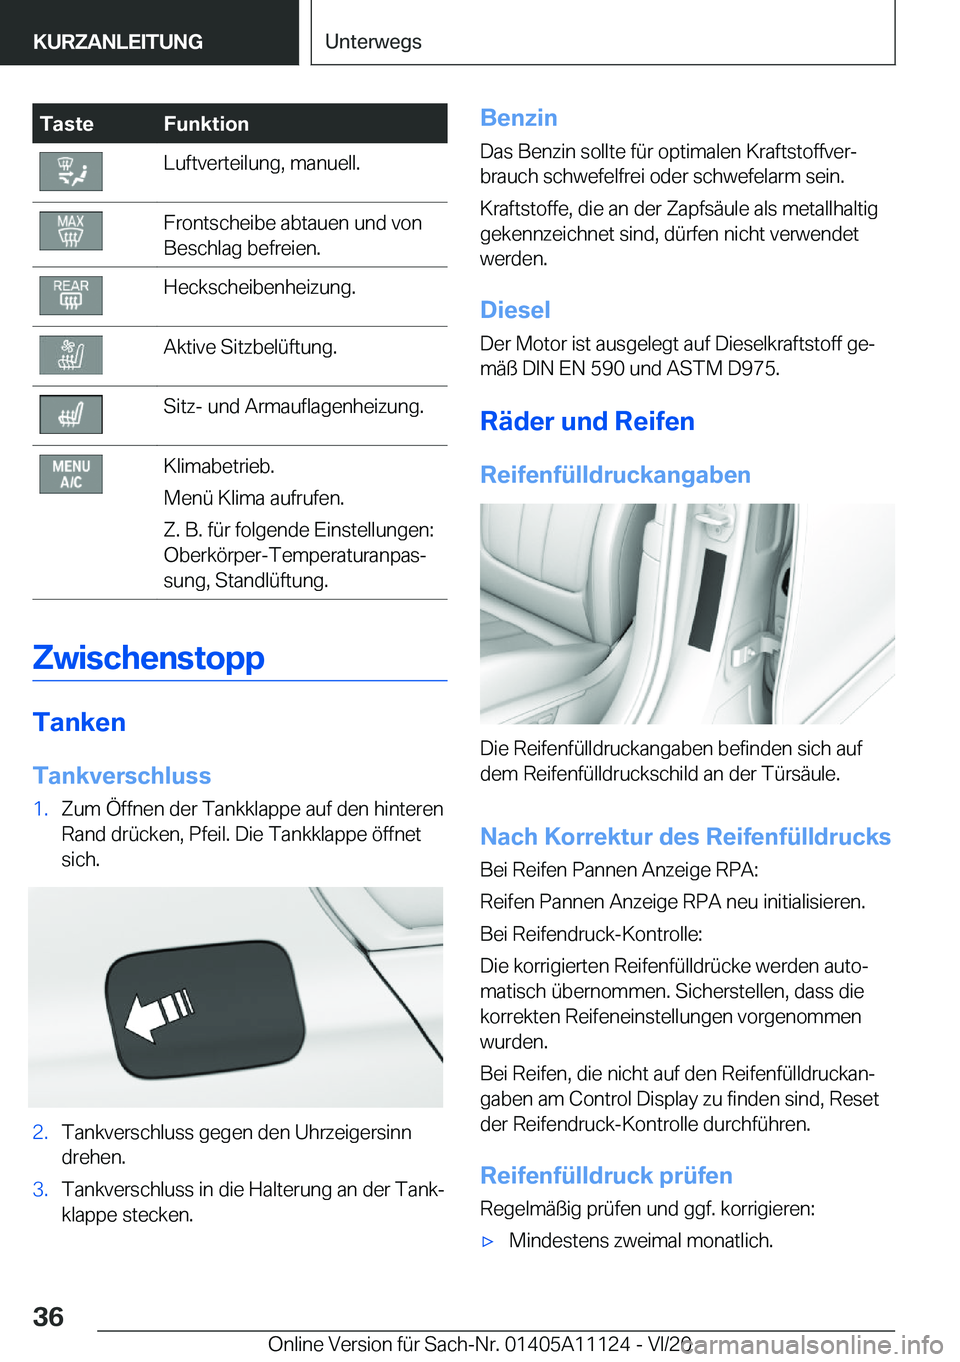 BMW 8 SERIES COUPE 2021  Betriebsanleitungen (in German) �T�a�s�t�e�F�u�n�k�t�i�o�n�L�u�f�t�v�e�r�t�e�i�l�u�n�g�,��m�a�n�u�e�l�l�.�F�r�o�n�t�s�c�h�e�i�b�e��a�b�t�a�u�e�n��u�n�d��v�o�n
�B�e�s�c�h�l�a�g��b�e�f�r�e�i�e�n�.�H�e�c�k�s�c�h�e�i�b�e�n�h�e�i�z�